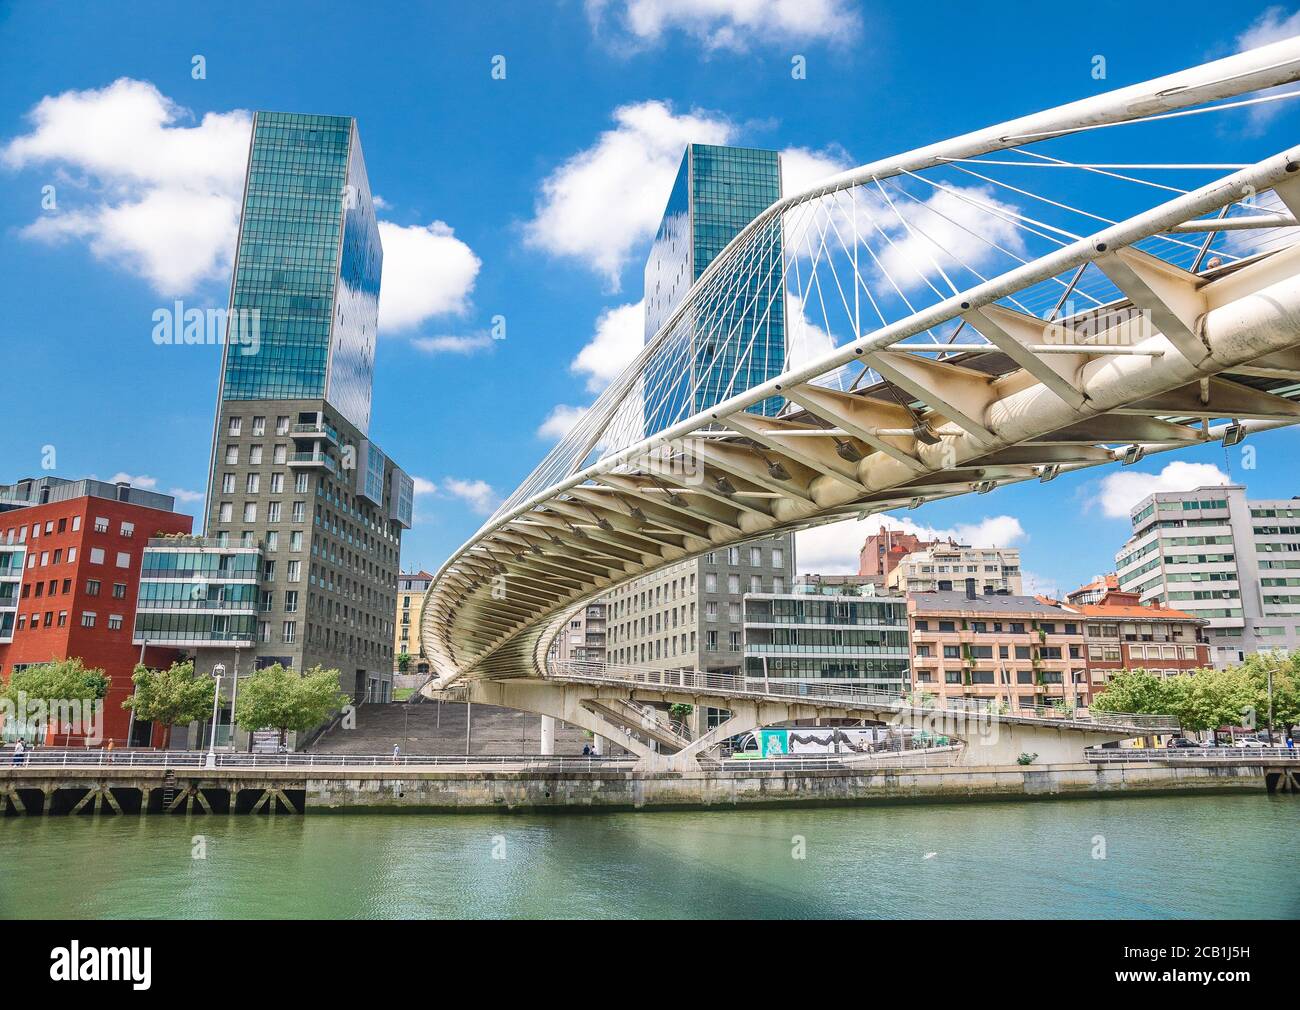 Colorido y moderno Puente de Bilbao, país Vasco, España. Foto de stock